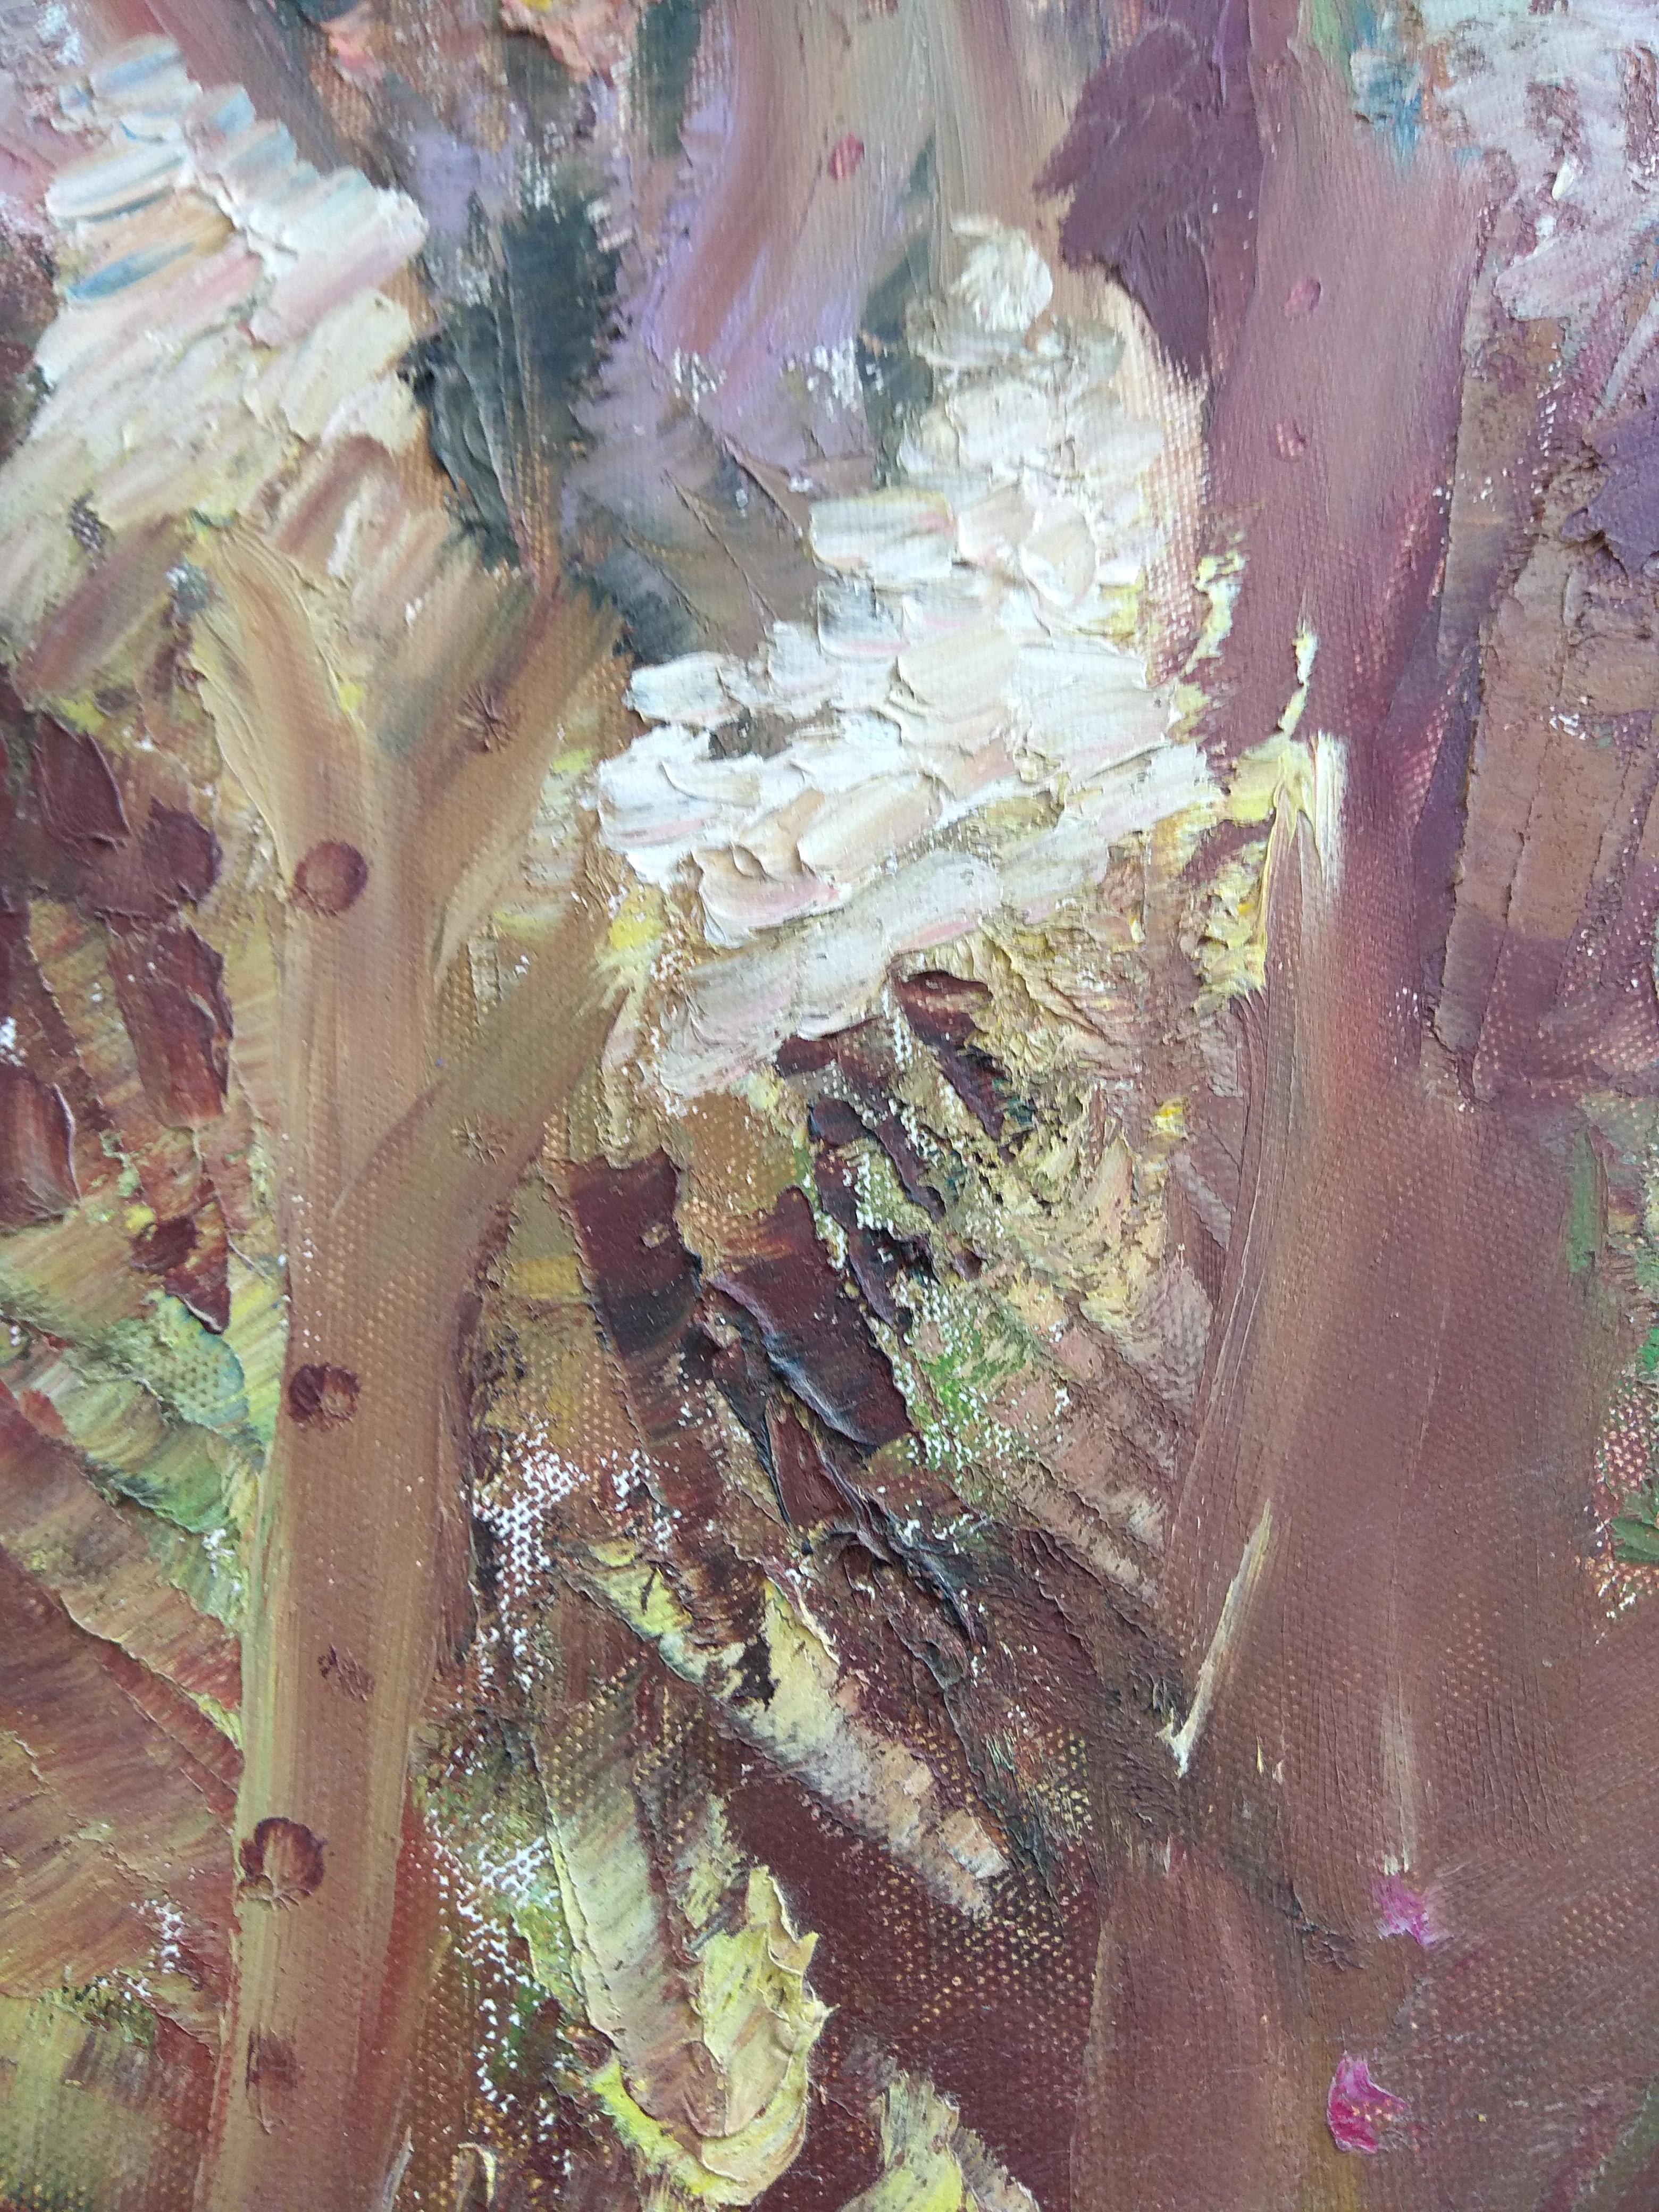 UNDERWATER PAINting Soft Coral a été créé sous l'eau - Impressionnisme abstrait Painting par Olga Nikitina